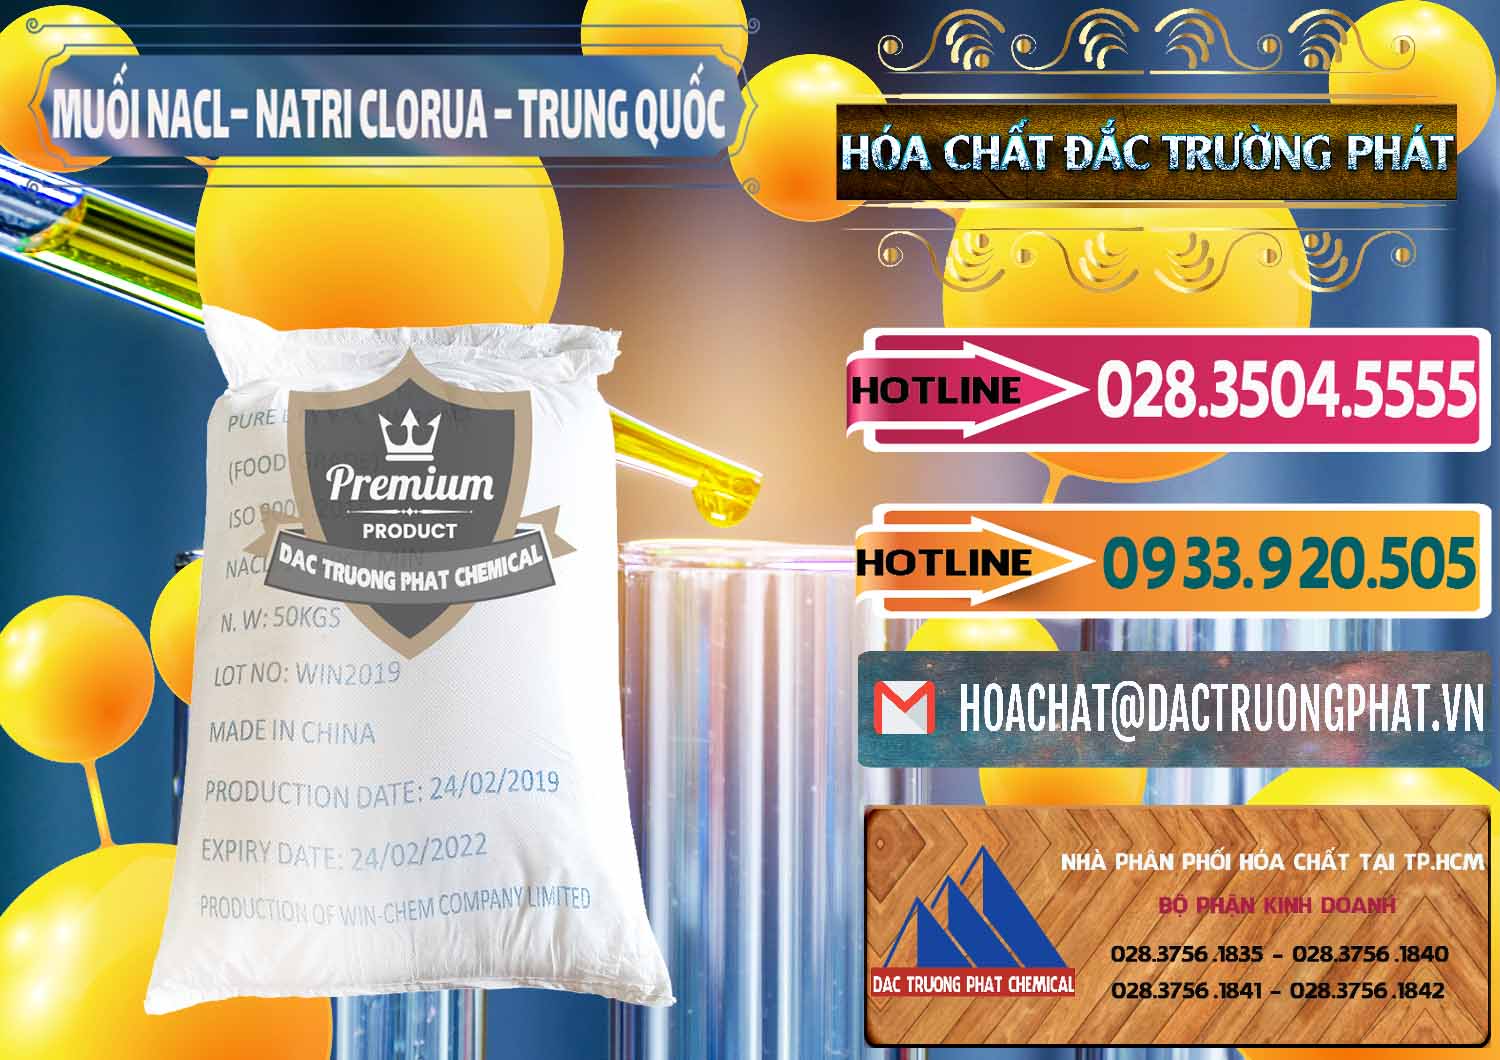 Cty chuyên phân phối ( bán ) Muối NaCL – Sodium Chloride Trung Quốc China - 0097 - Nhà phân phối và kinh doanh hóa chất tại TP.HCM - dactruongphat.vn